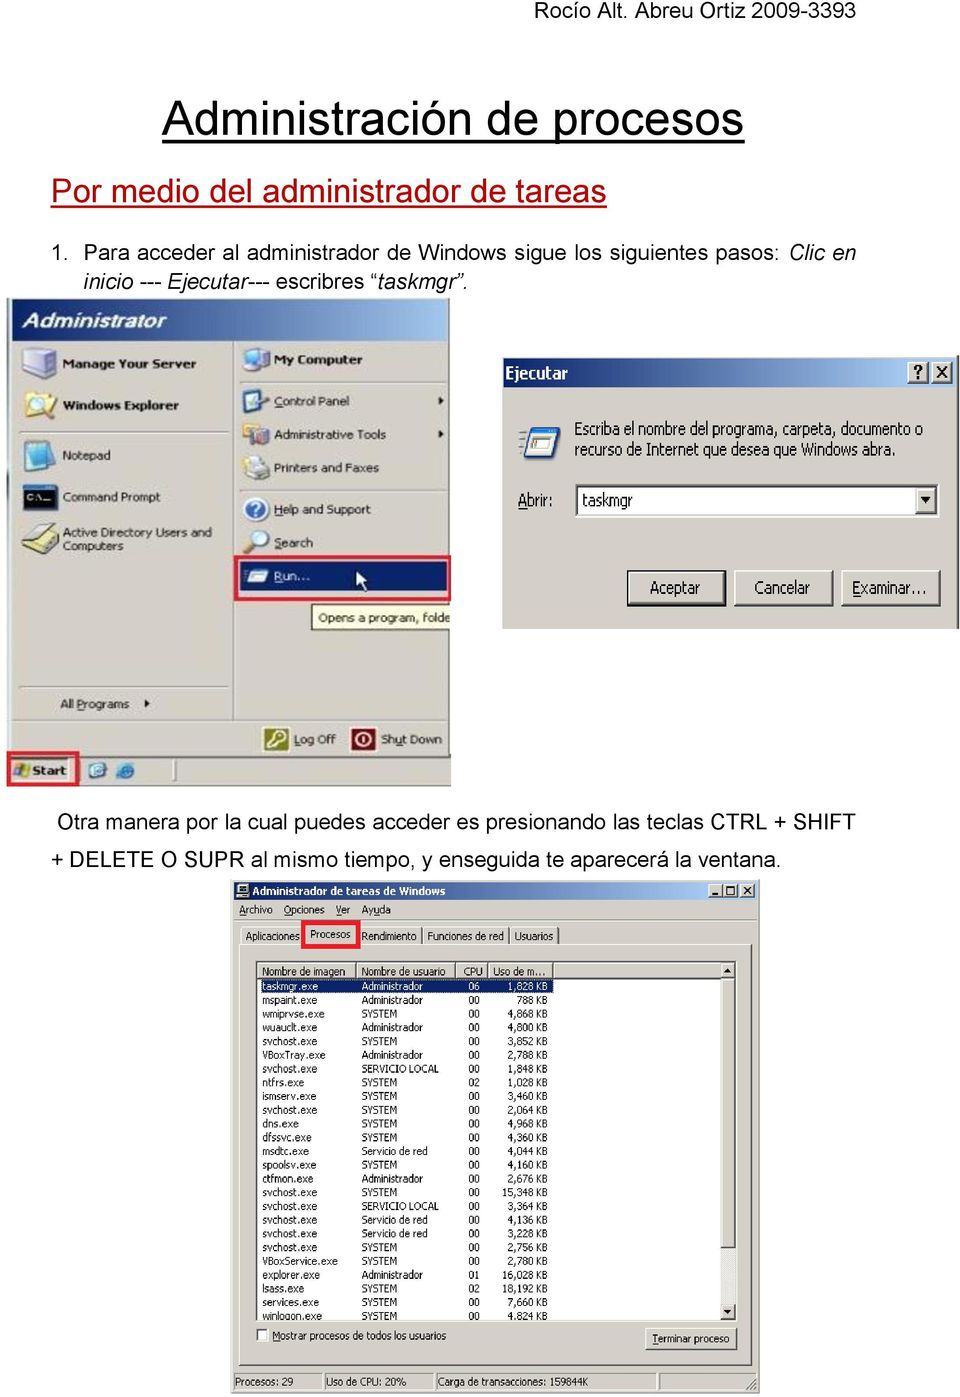 Para acceder al administrador de Windows sigue los siguientes pasos: Clic en inicio ---